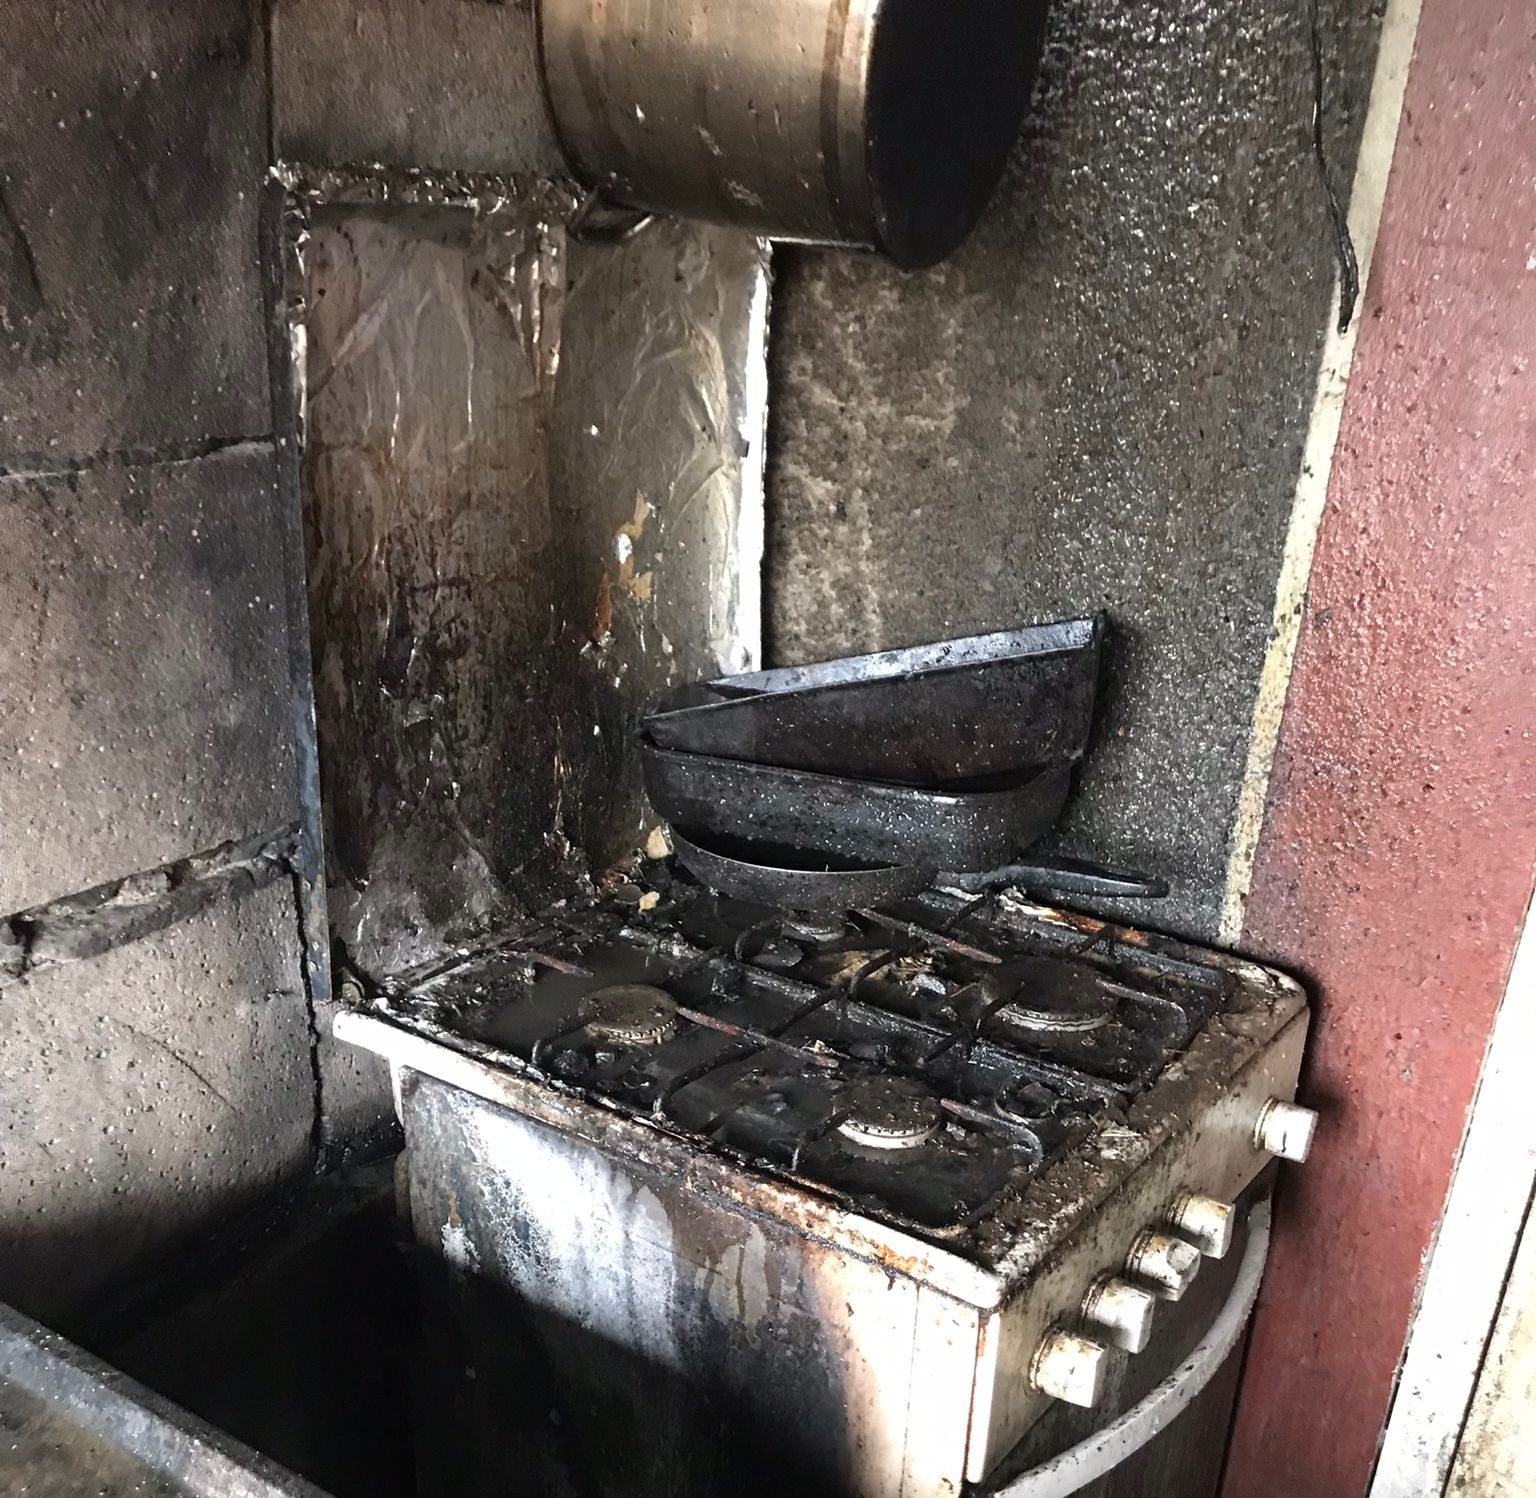 Casă din Luncavița afectată de foc din cauza unui aparat de gătit lăsat nesupravegheat